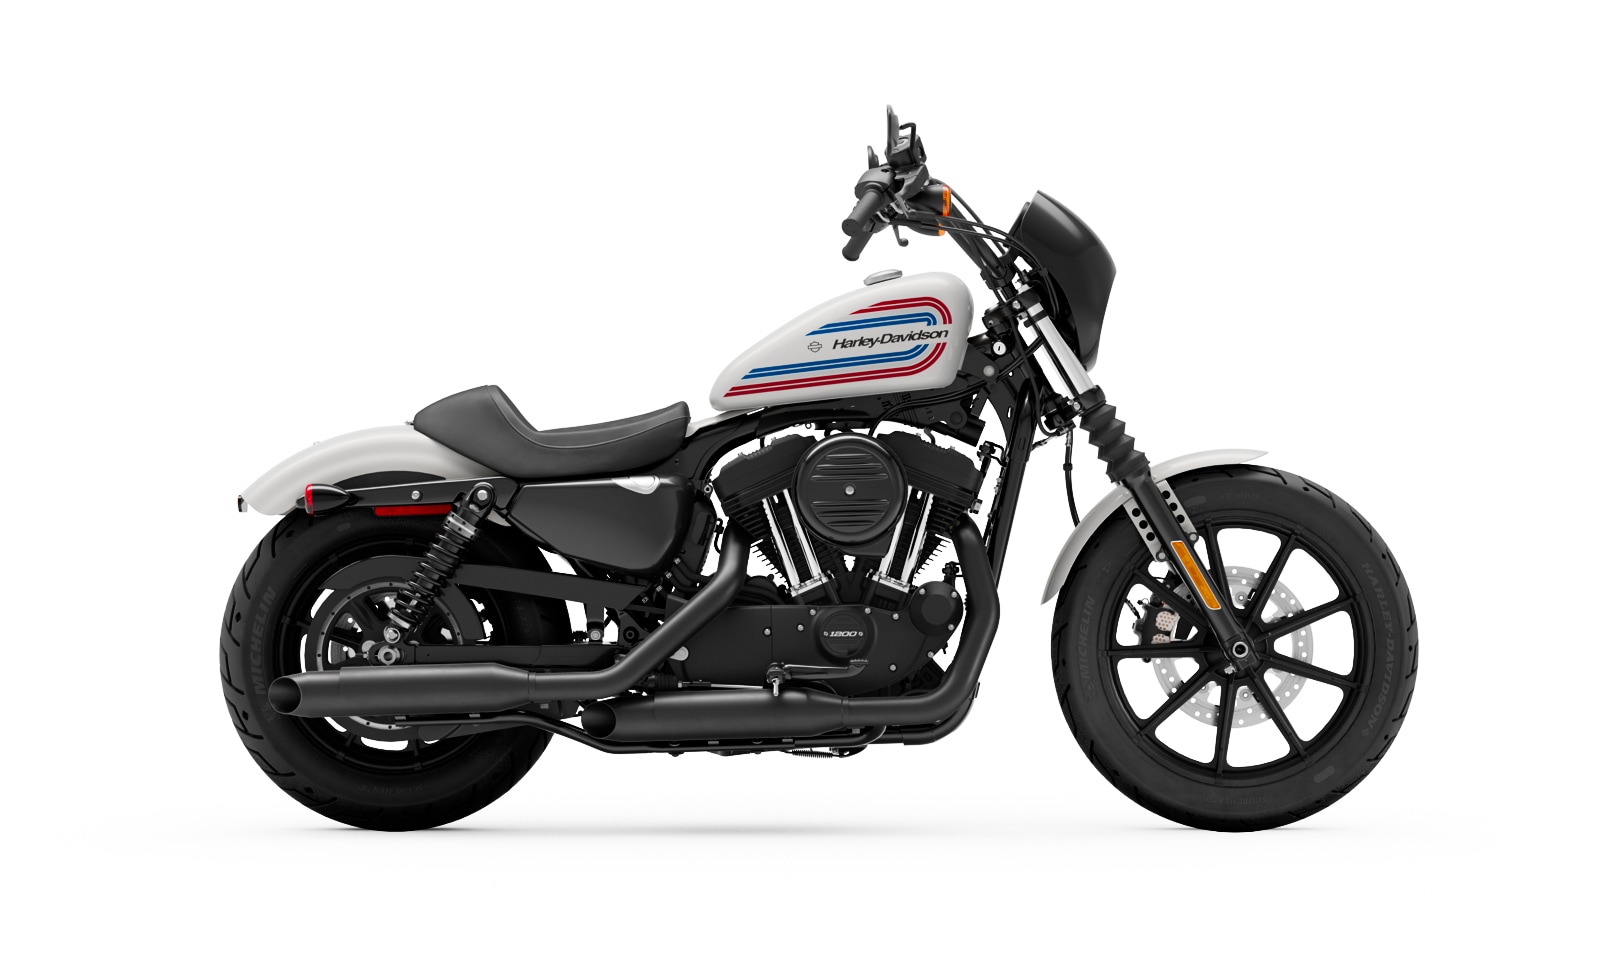 Harley Davidson Iron 1200 Price in Bangladesh 2022